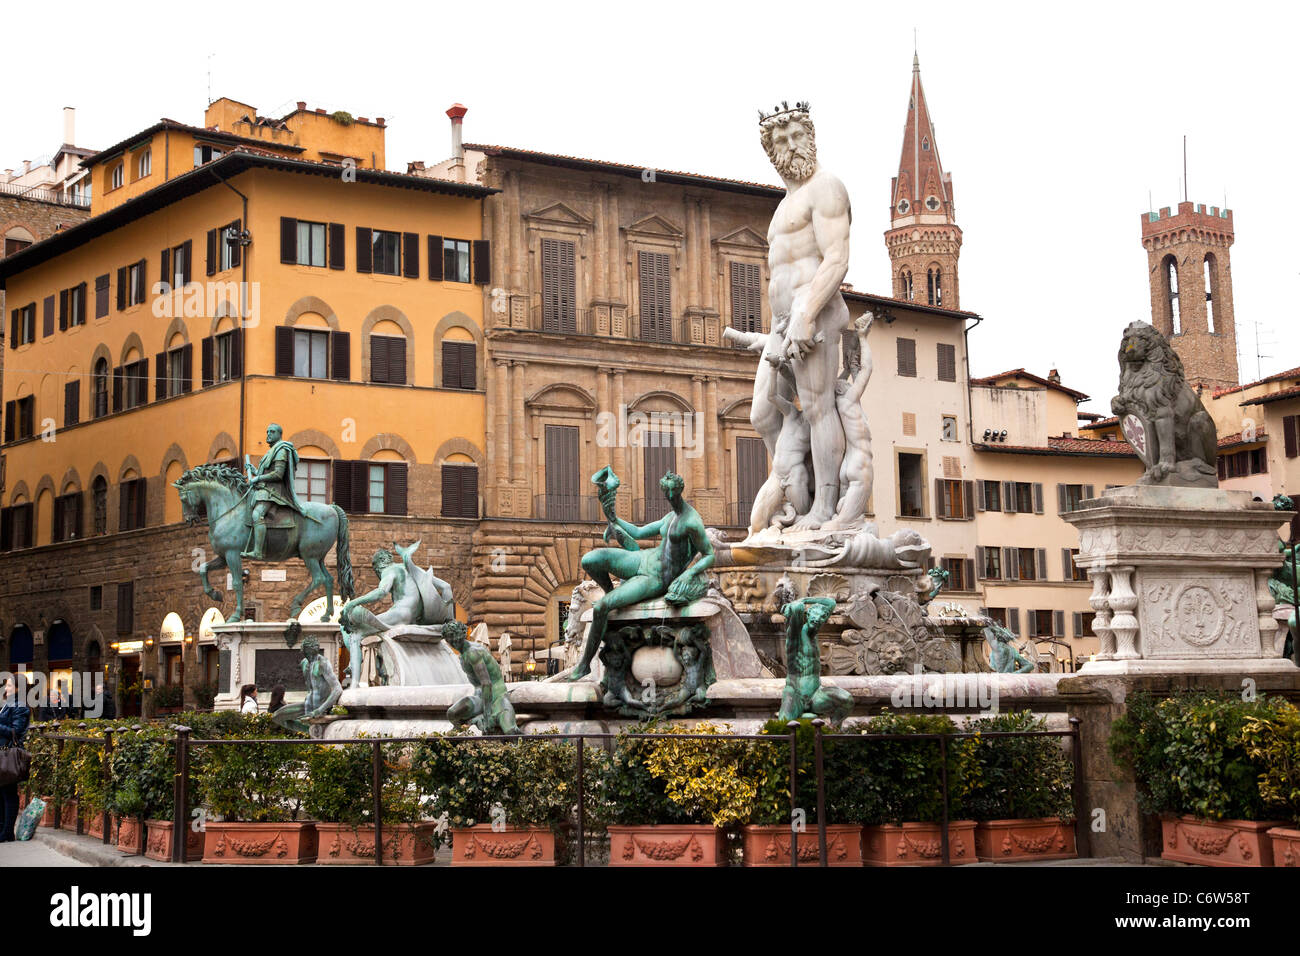 The Fontana di Nettuno (Neptune Fountain) in Piazza della Signoria in Florence Italy. Stock Photo